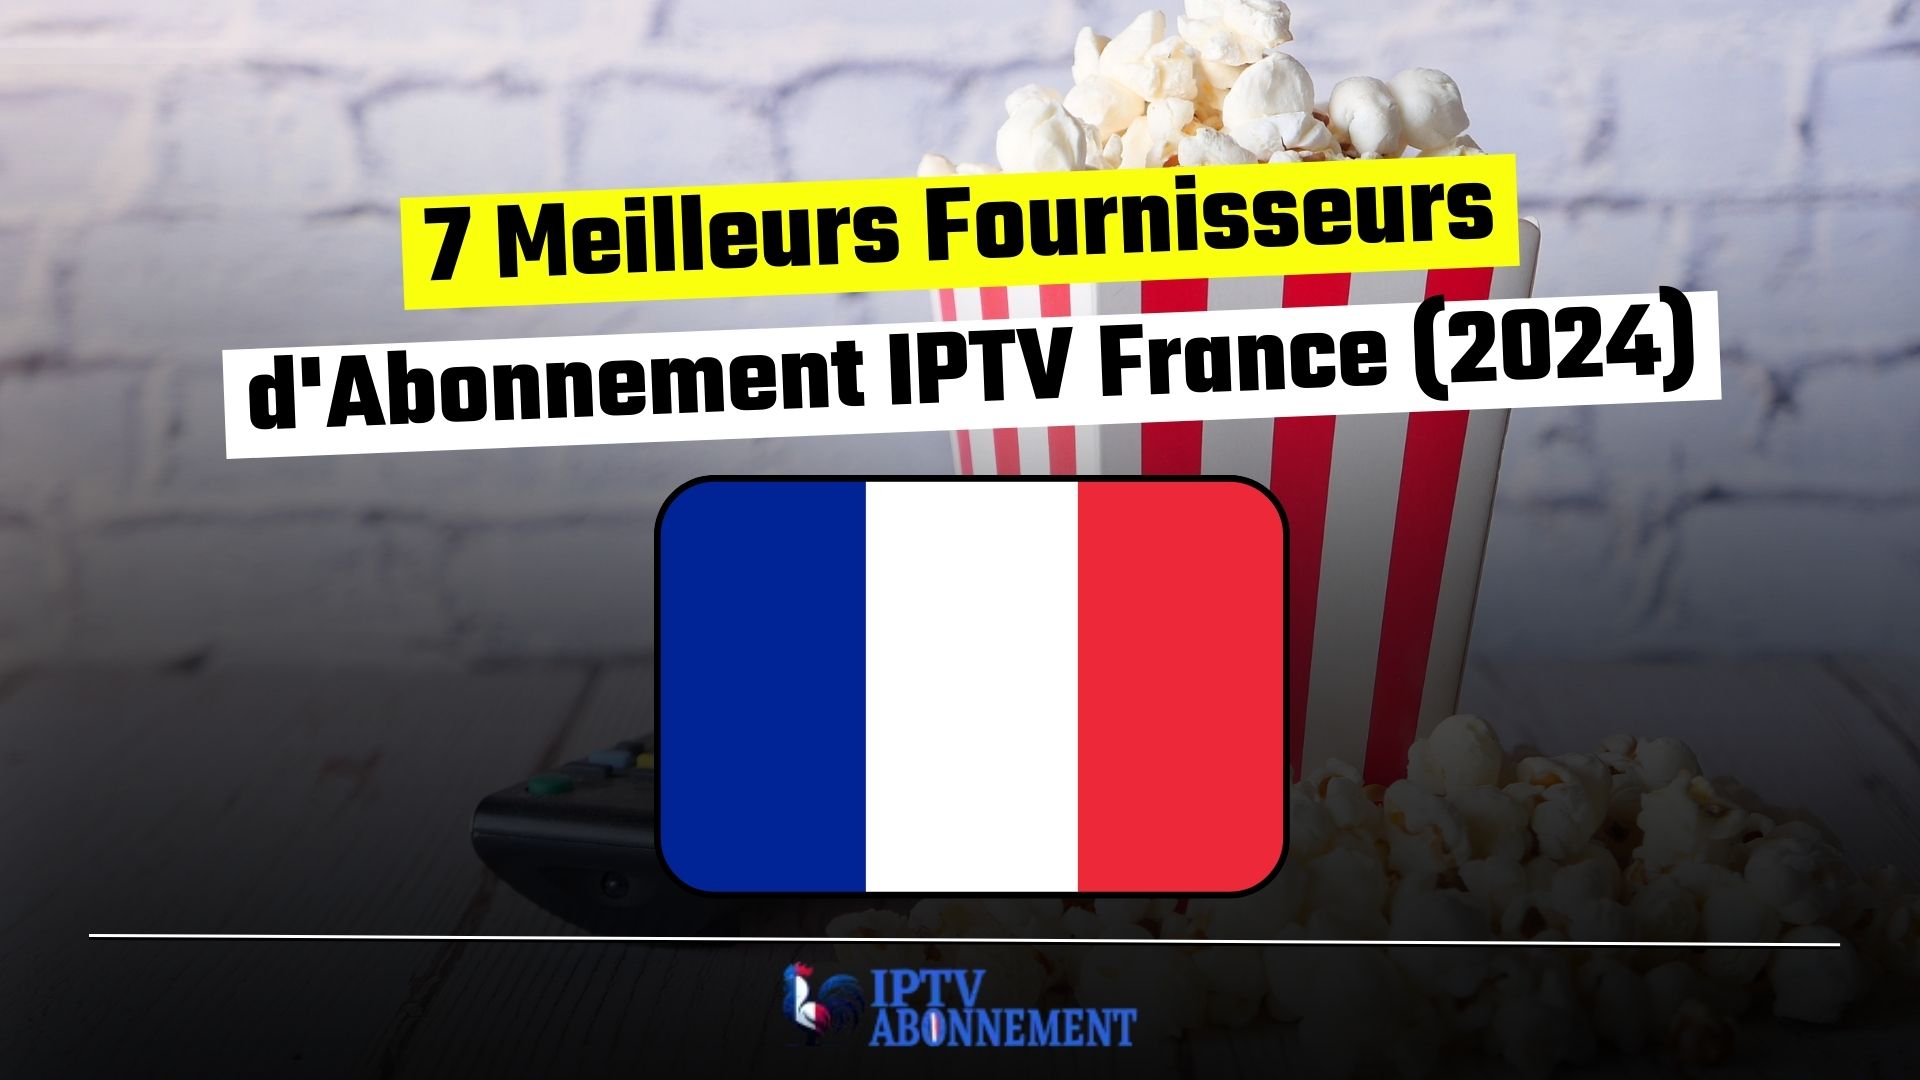 7 Meilleurs Fournisseurs d'Abonnement IPTV France (2024)